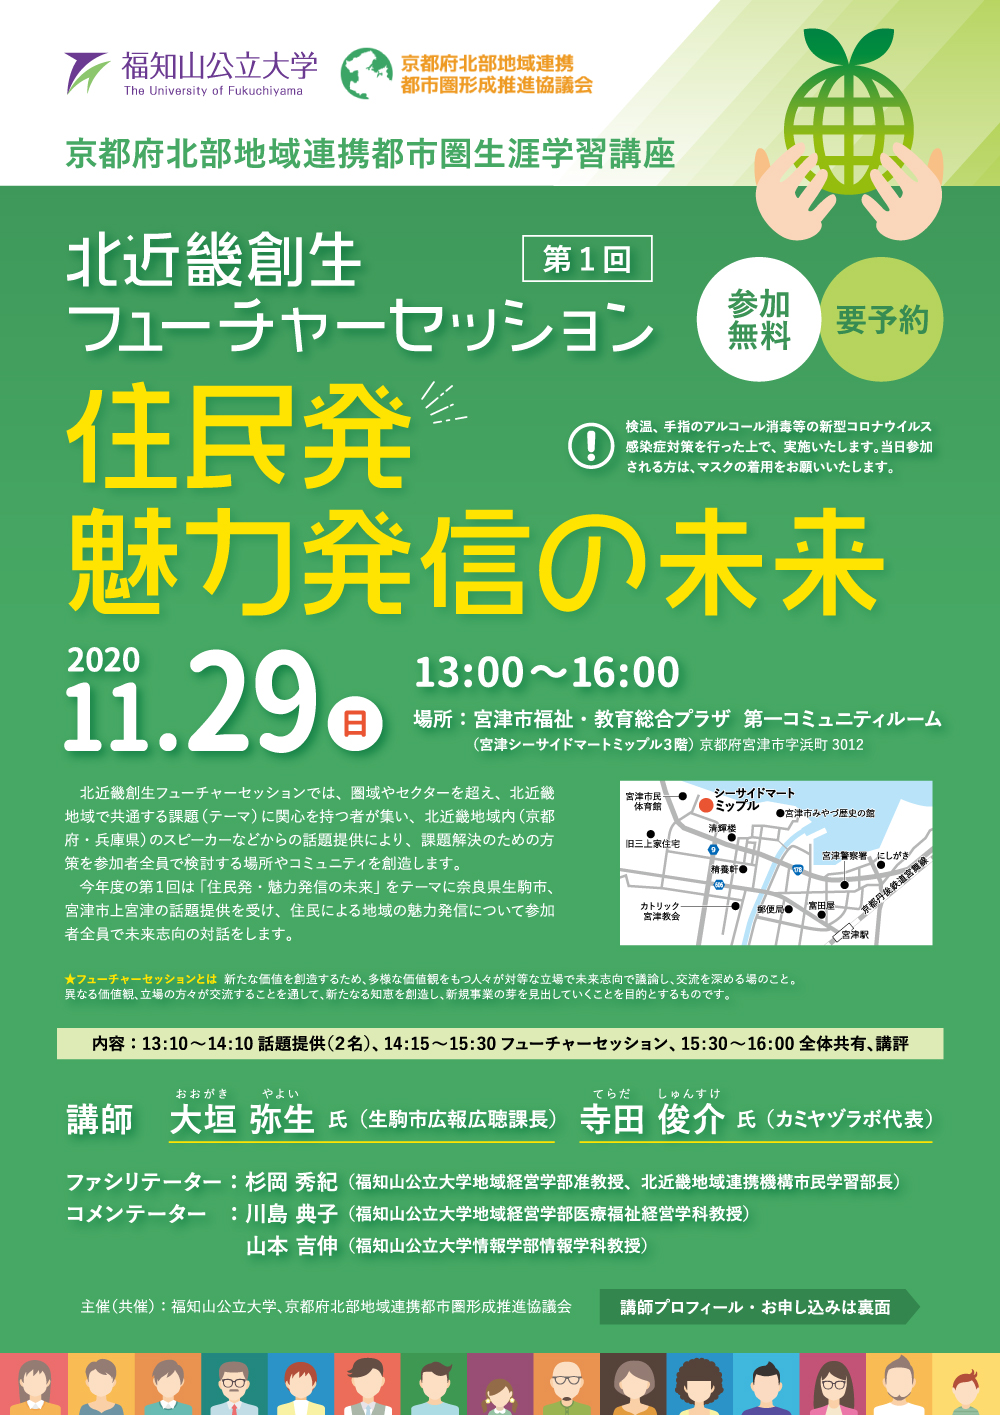 第1回北近畿創生フューチャーセッション2020を開催します 福知山公立大学